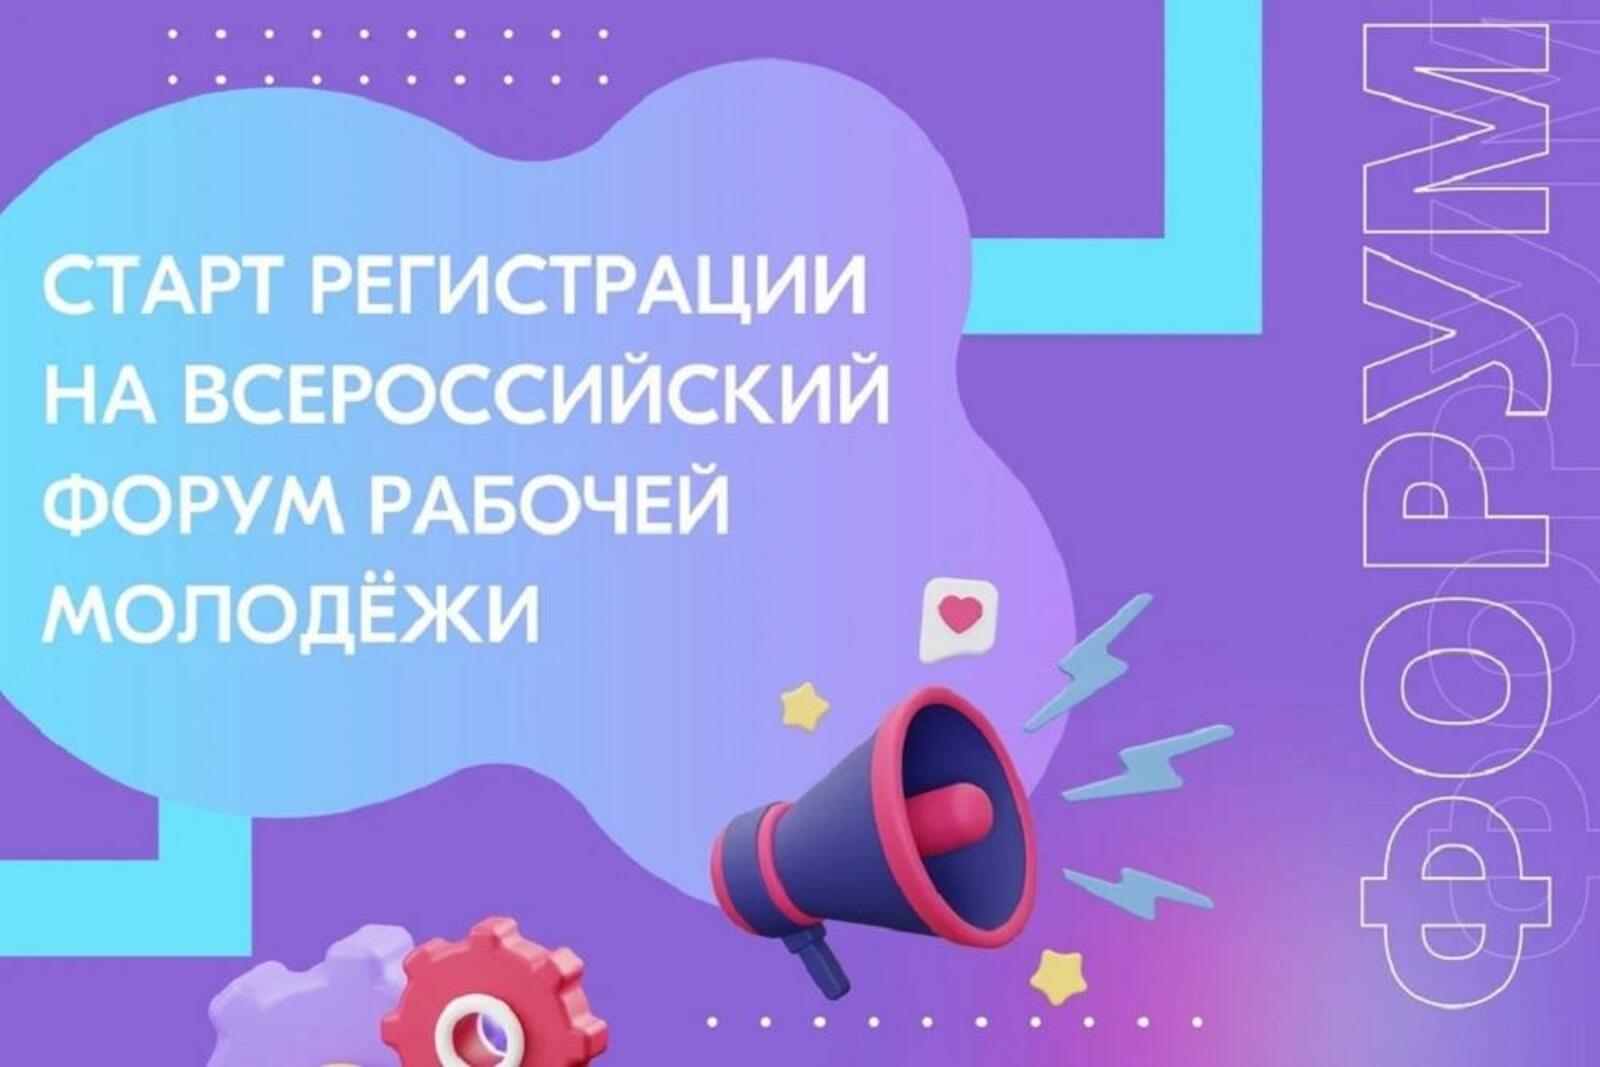 Молодежь из Башкирии сможет участвовать во Всероссийском форуме рабочей молодежи